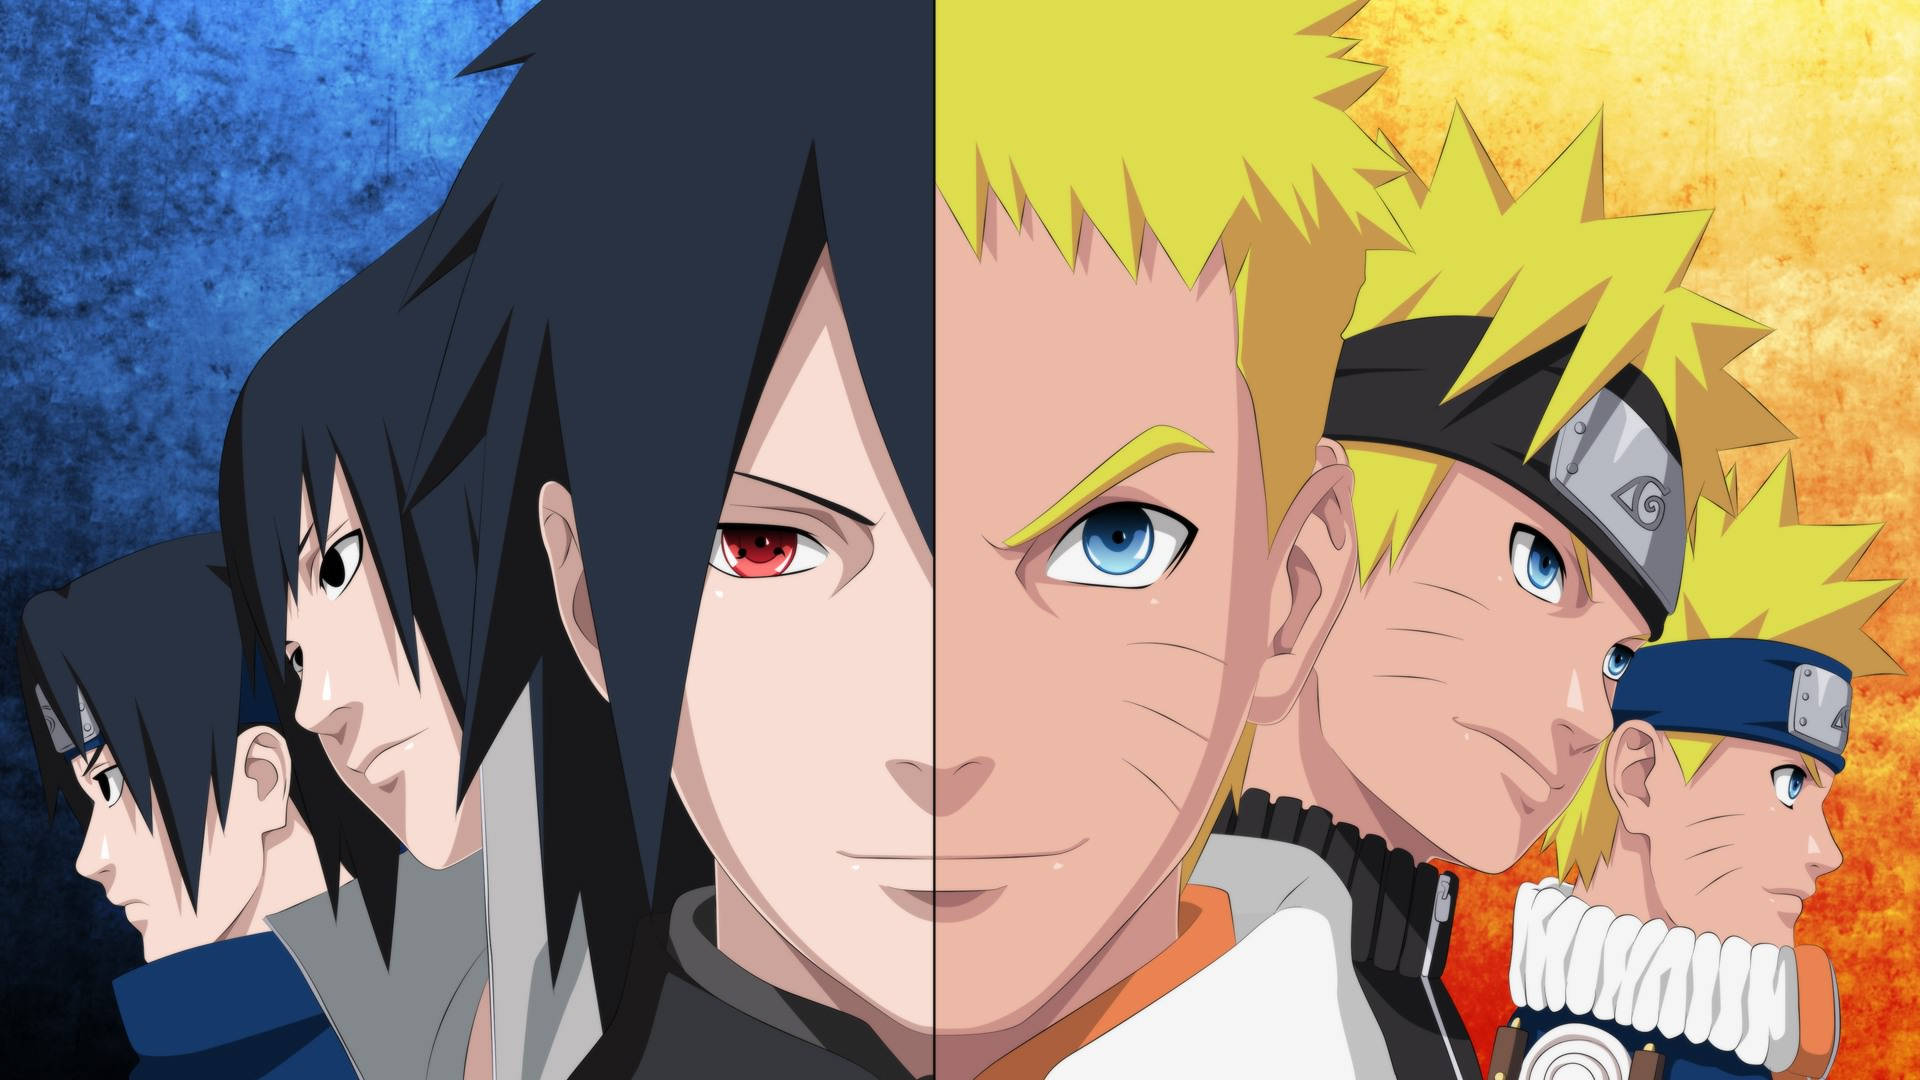 Naruto and sasuke images